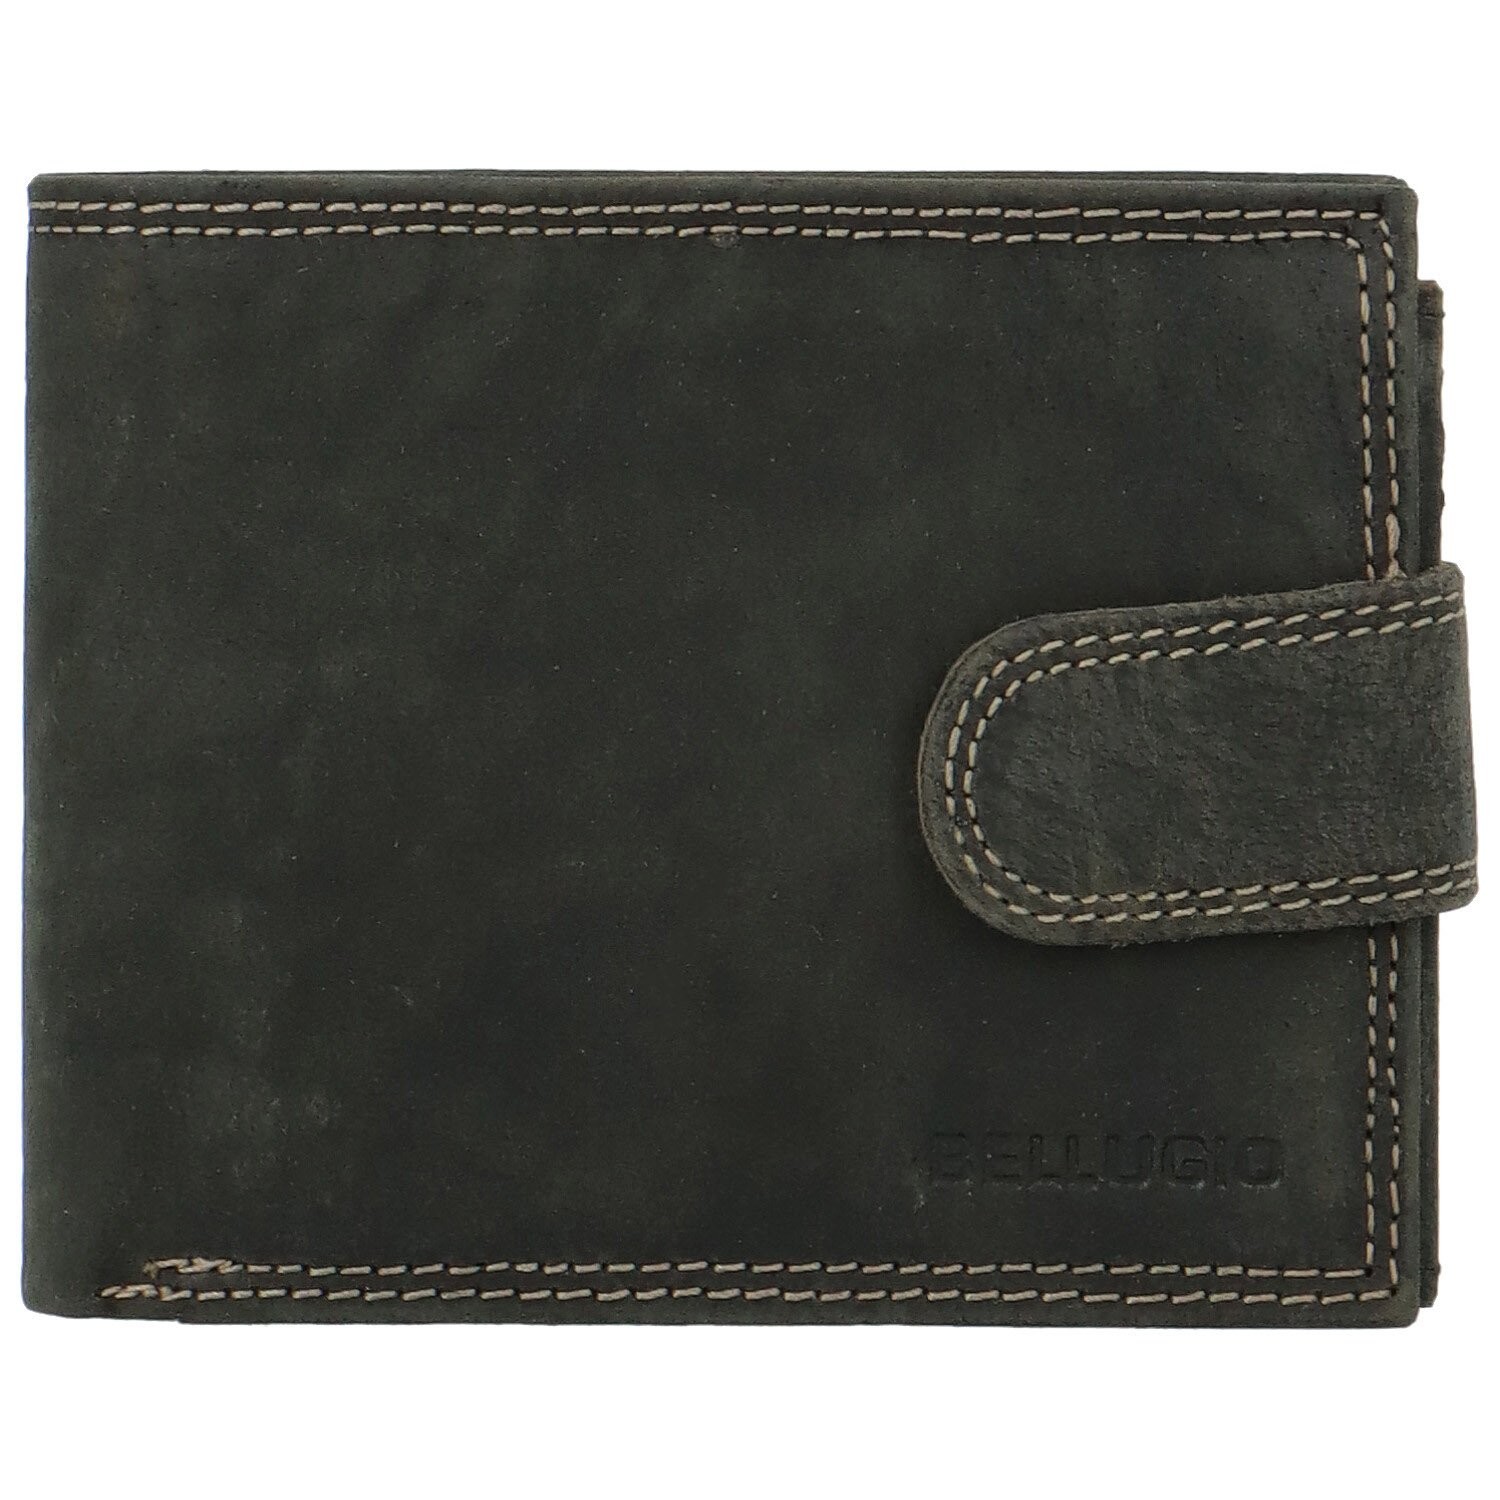 Pánská kožená peněženka černá - Bellugio Santiago černá